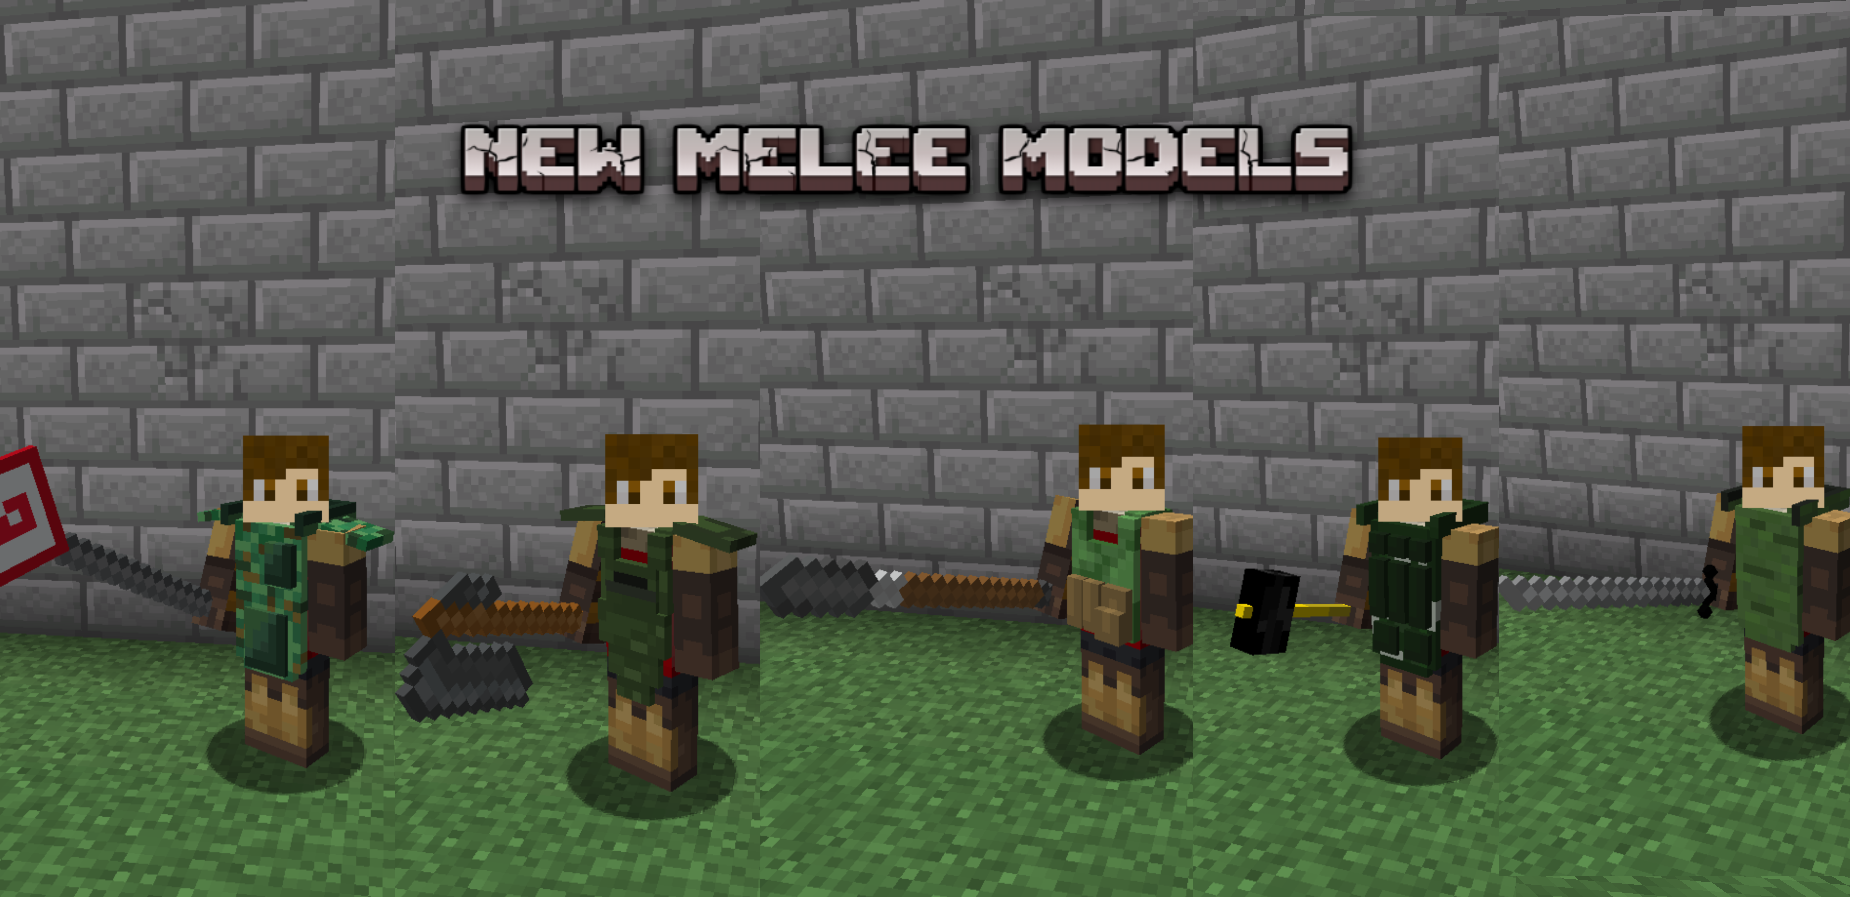 New melee models